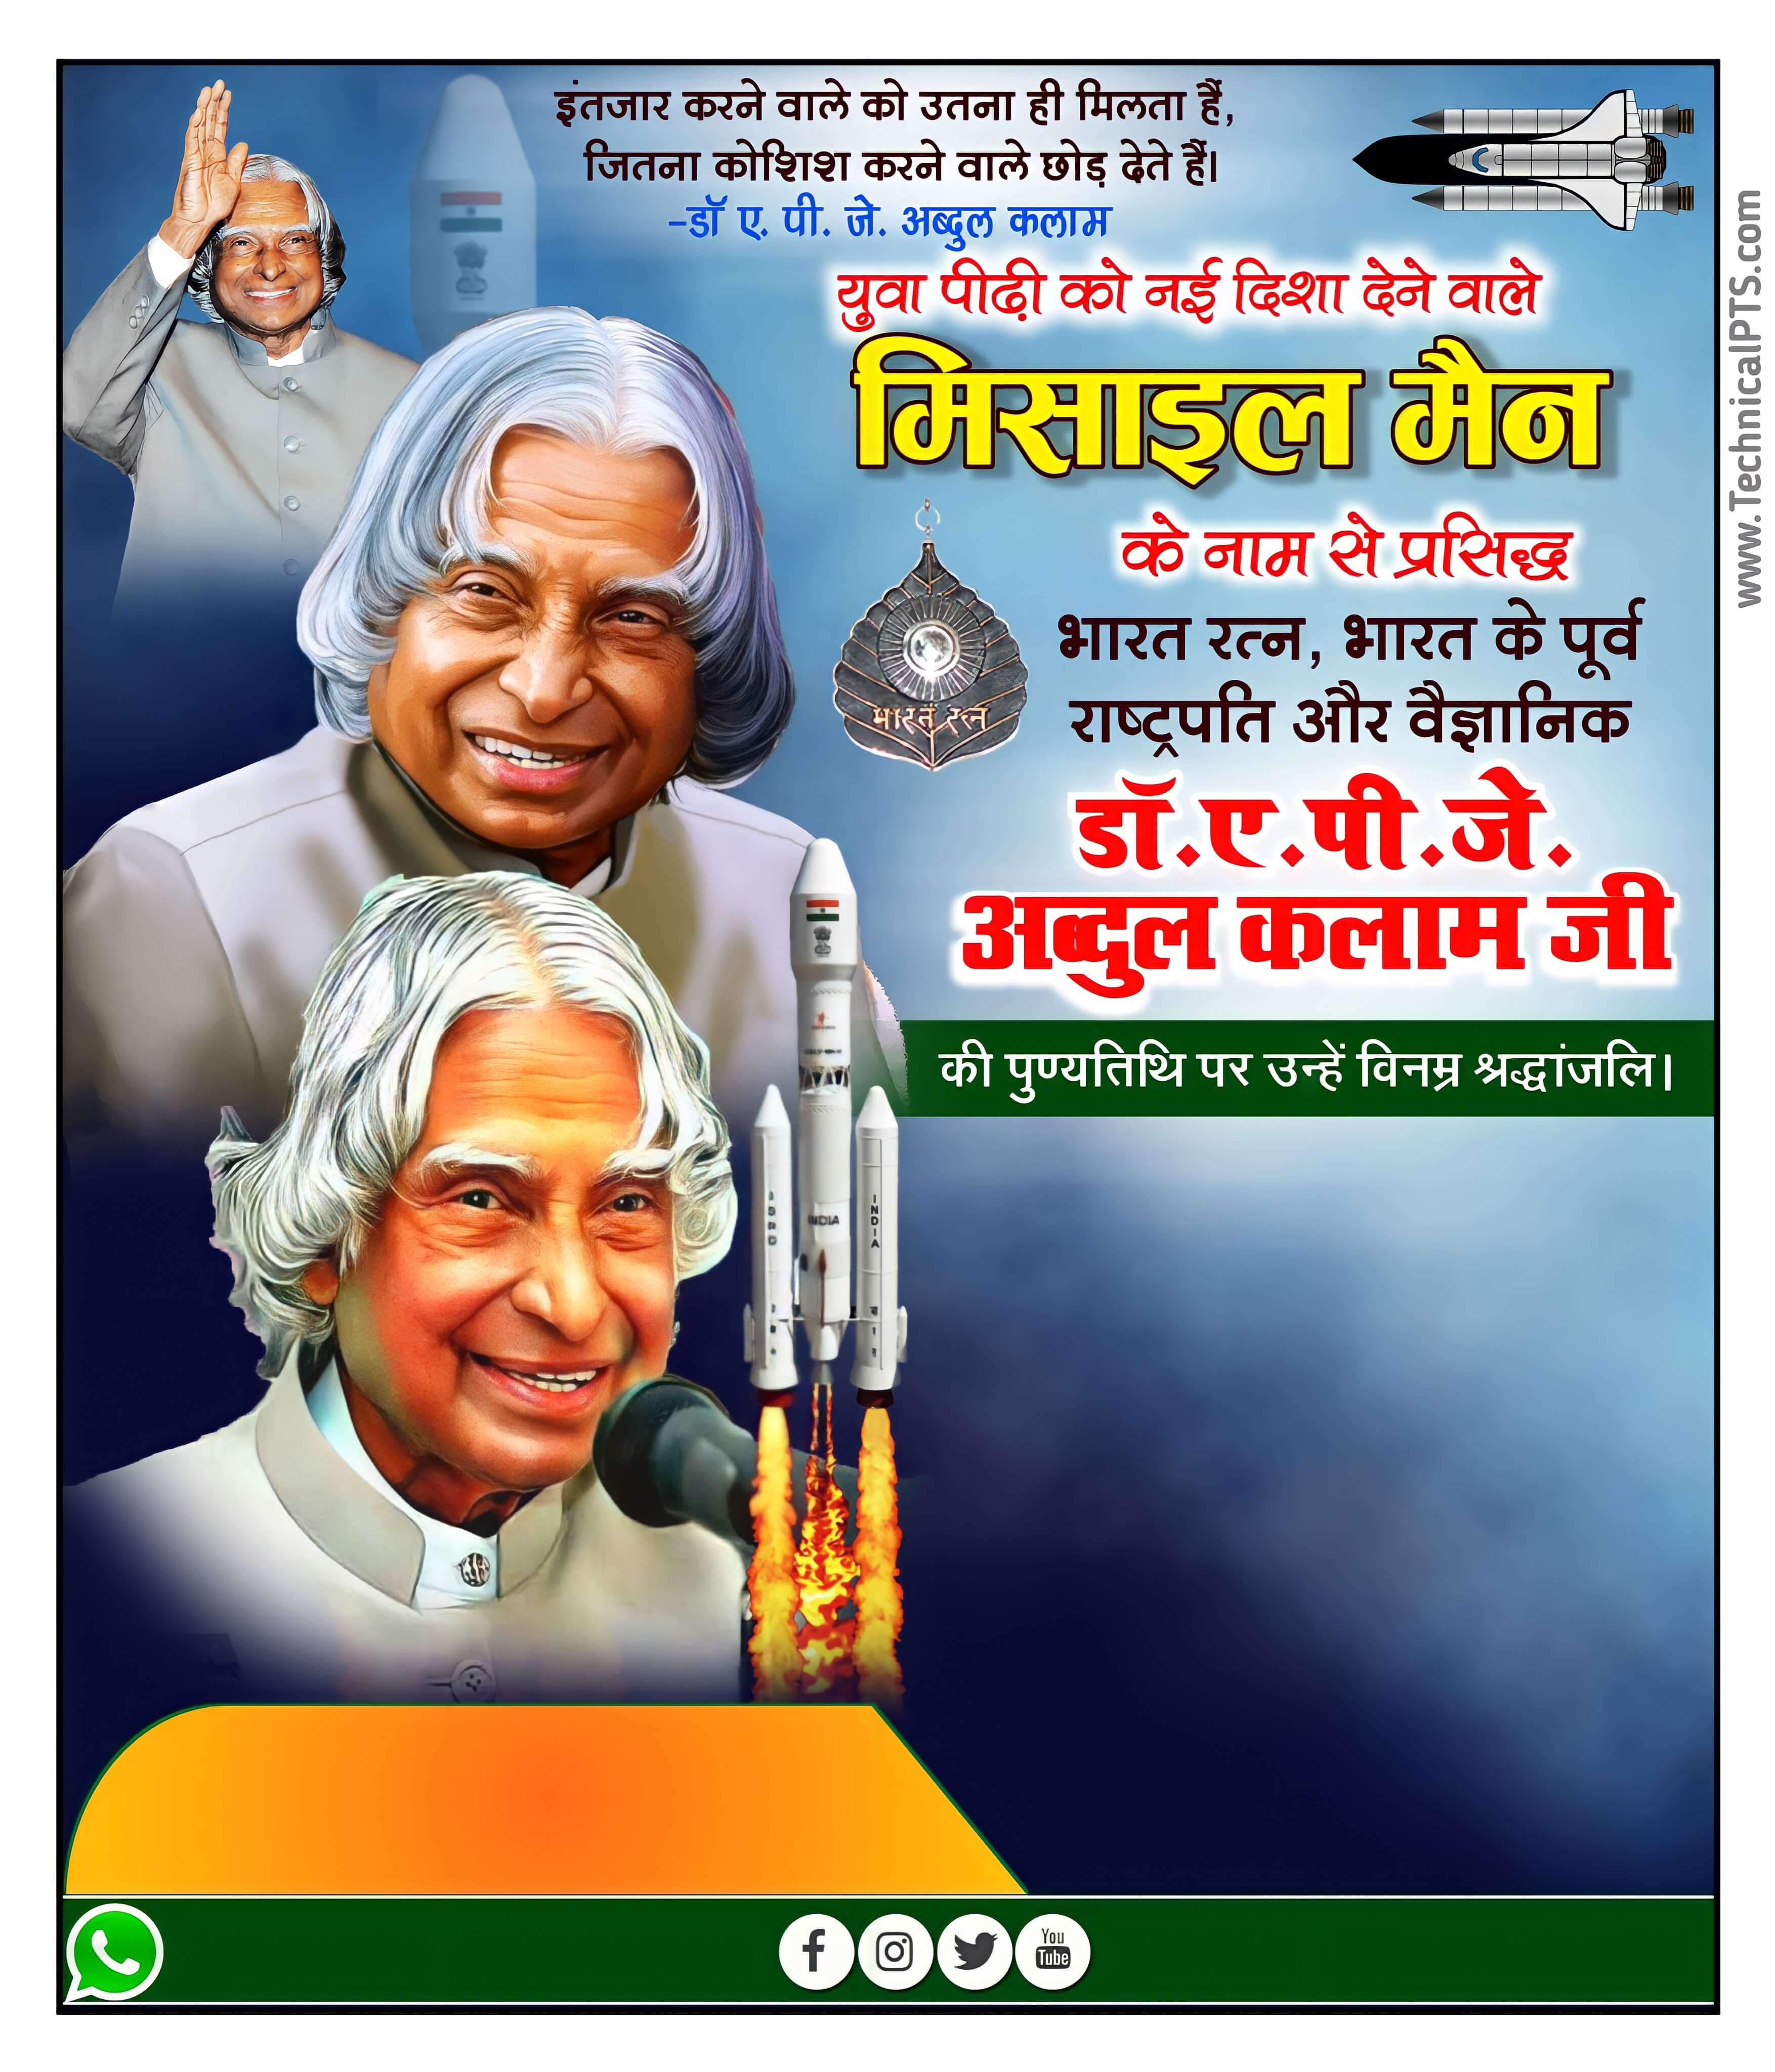 Abdul Kalam punyatithi poster Kaise banaen| Abdul Kalam punyatithi ka poster| Abdul Kalam punyatithi banner editing